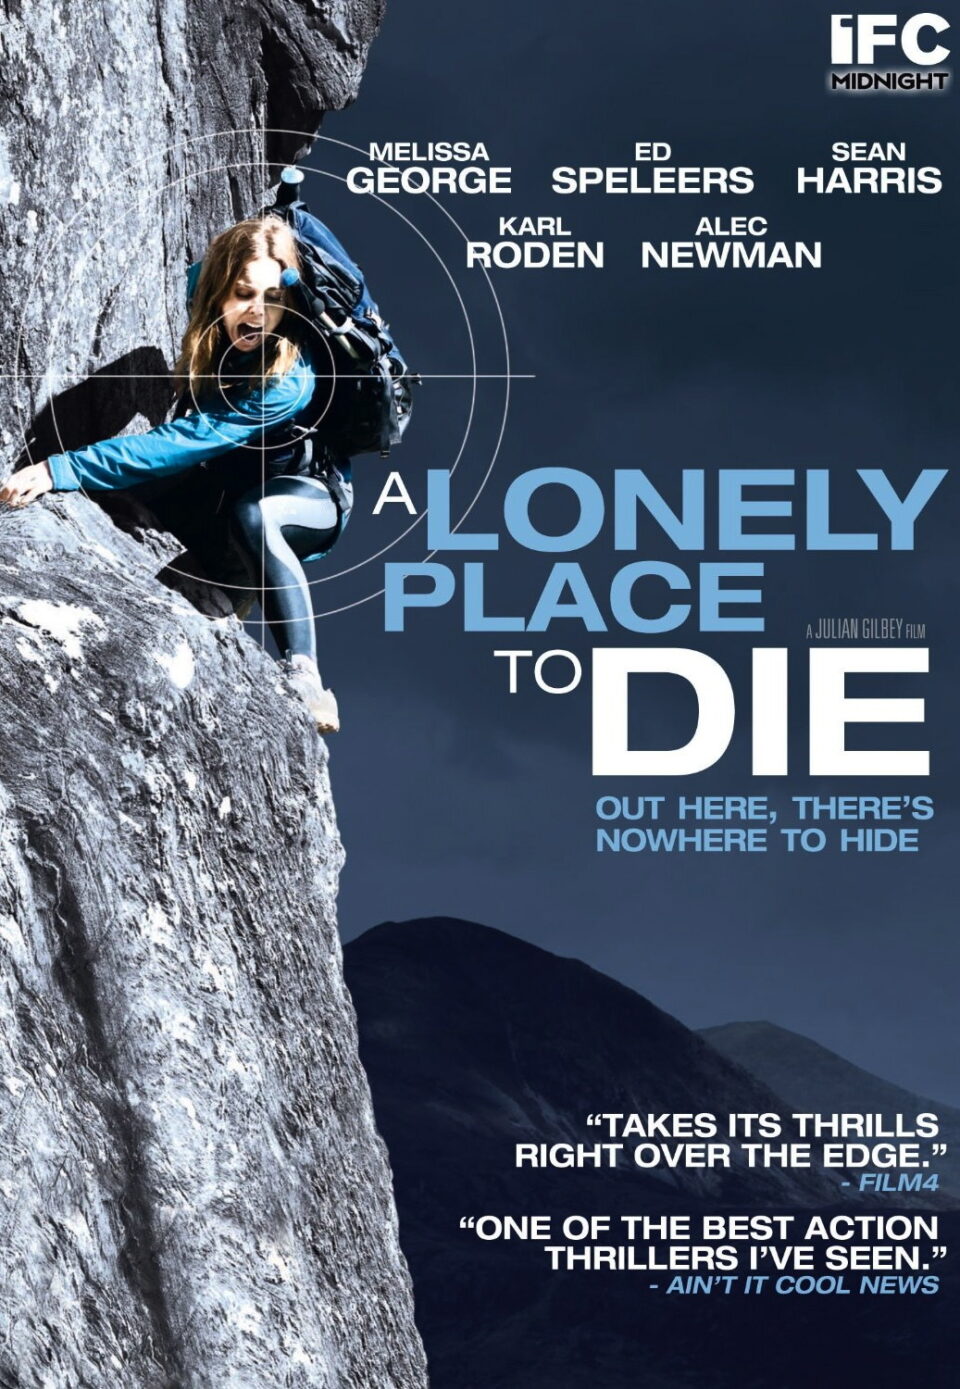 Film Tv 12 novembre. A Lonely Place to Die, in una natura da brivido
La recensione del film su VigilanzaTv